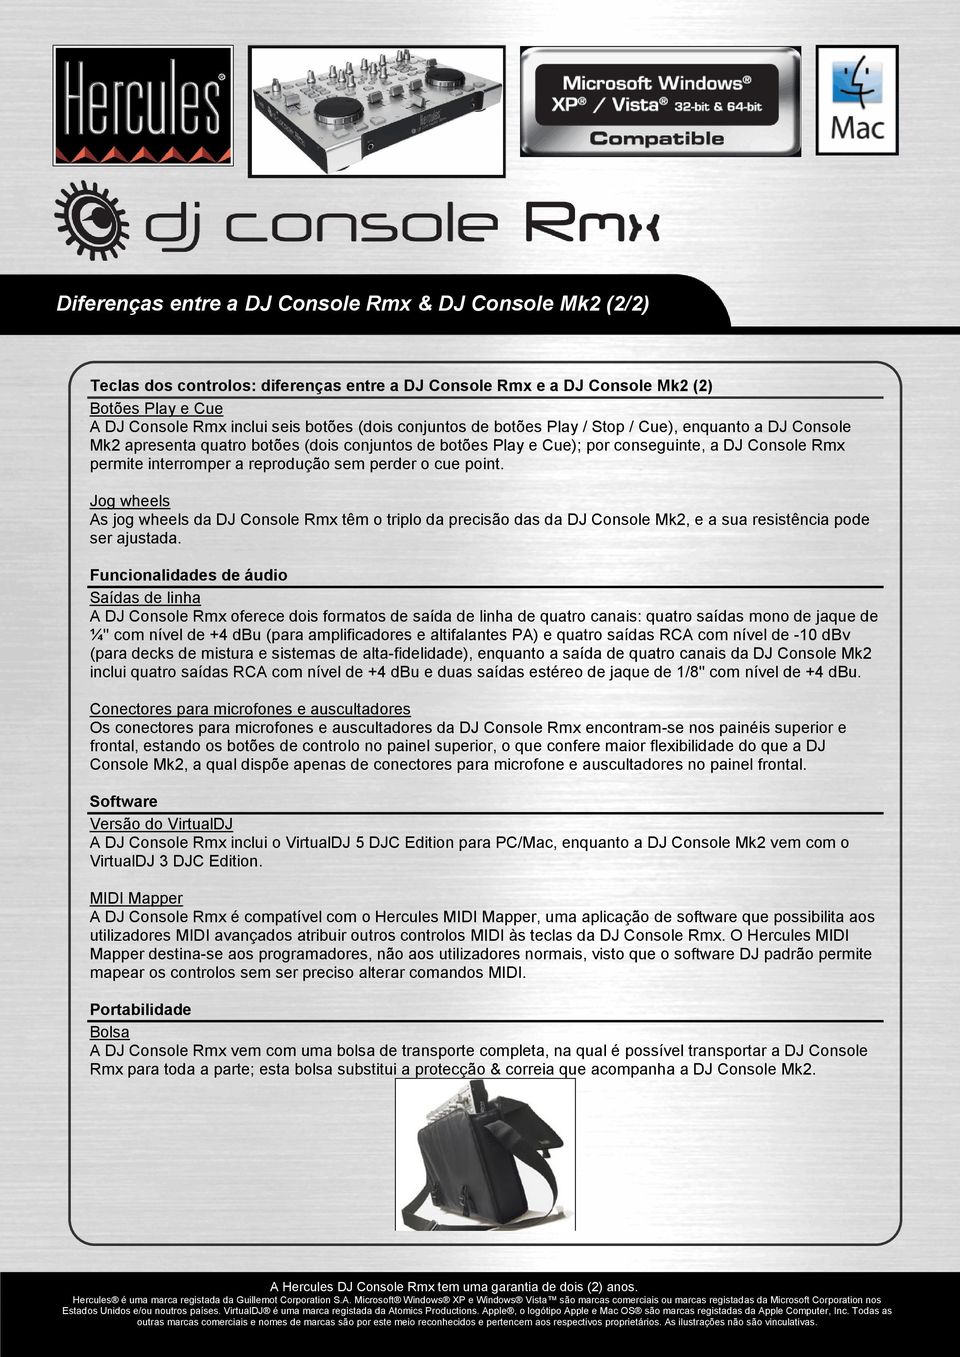 perder o cue point. Jog wheels As jog wheels da DJ Console Rmx têm o triplo da precisão das da DJ Console Mk2, e a sua resistência pode ser ajustada.